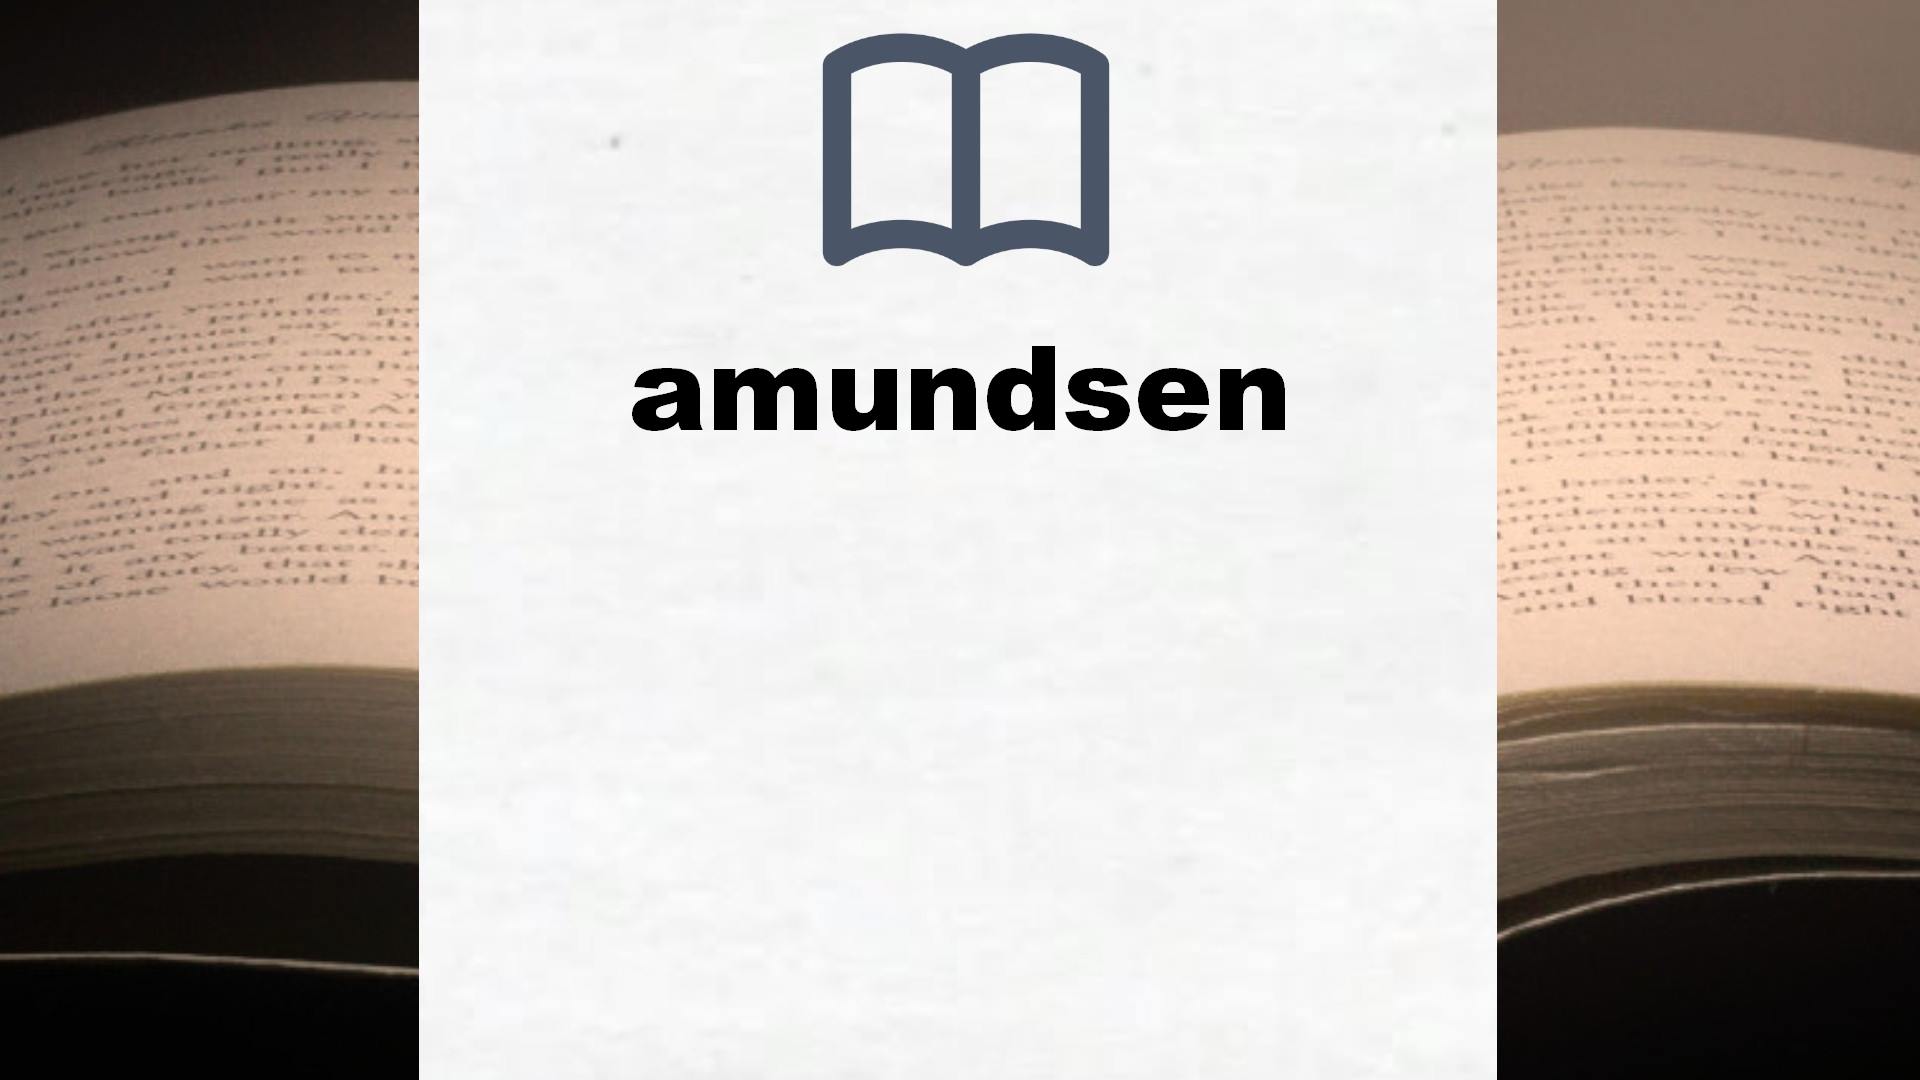 Libros sobre amundsen